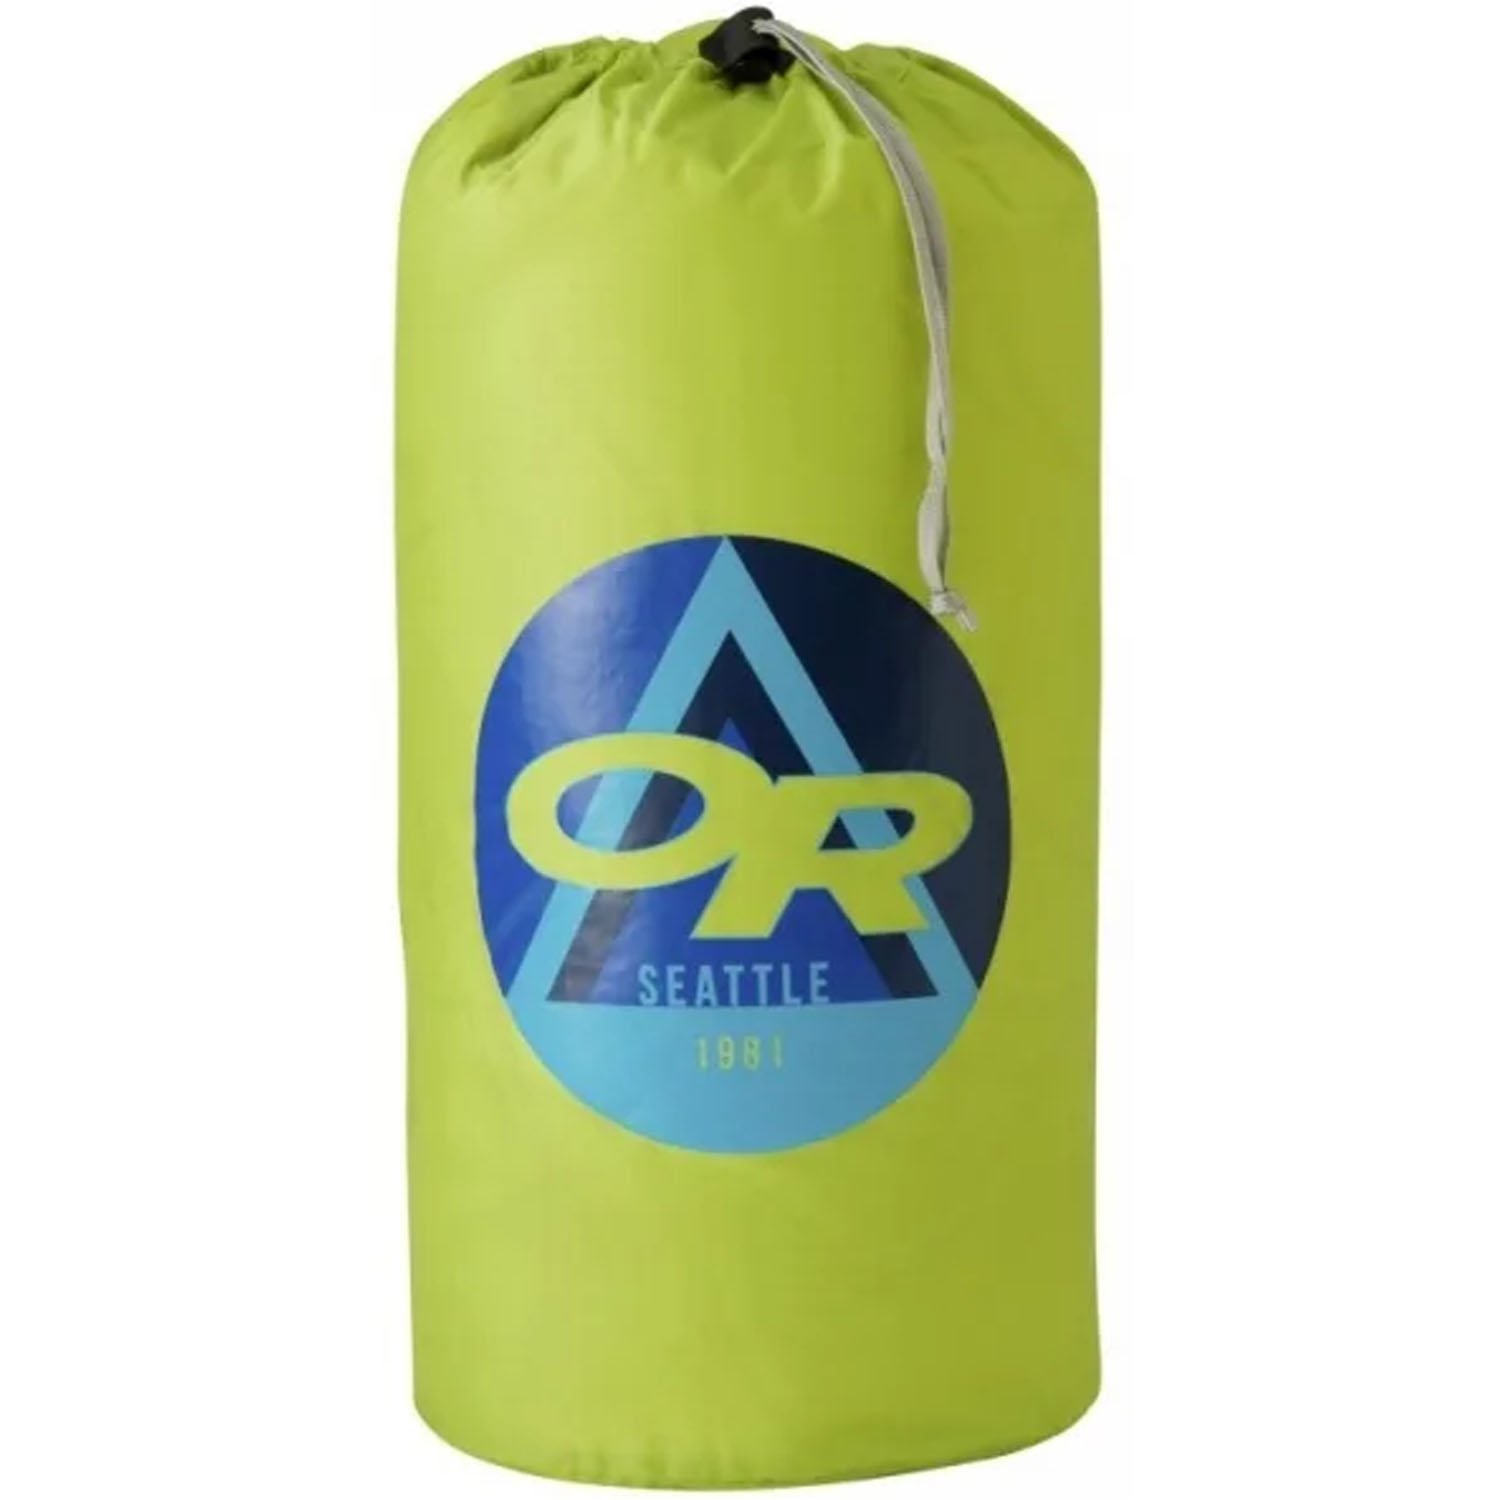 Влагозащитный мешок Outdoor Research Epicenter, 20 литров, lemongrass, 2501770489